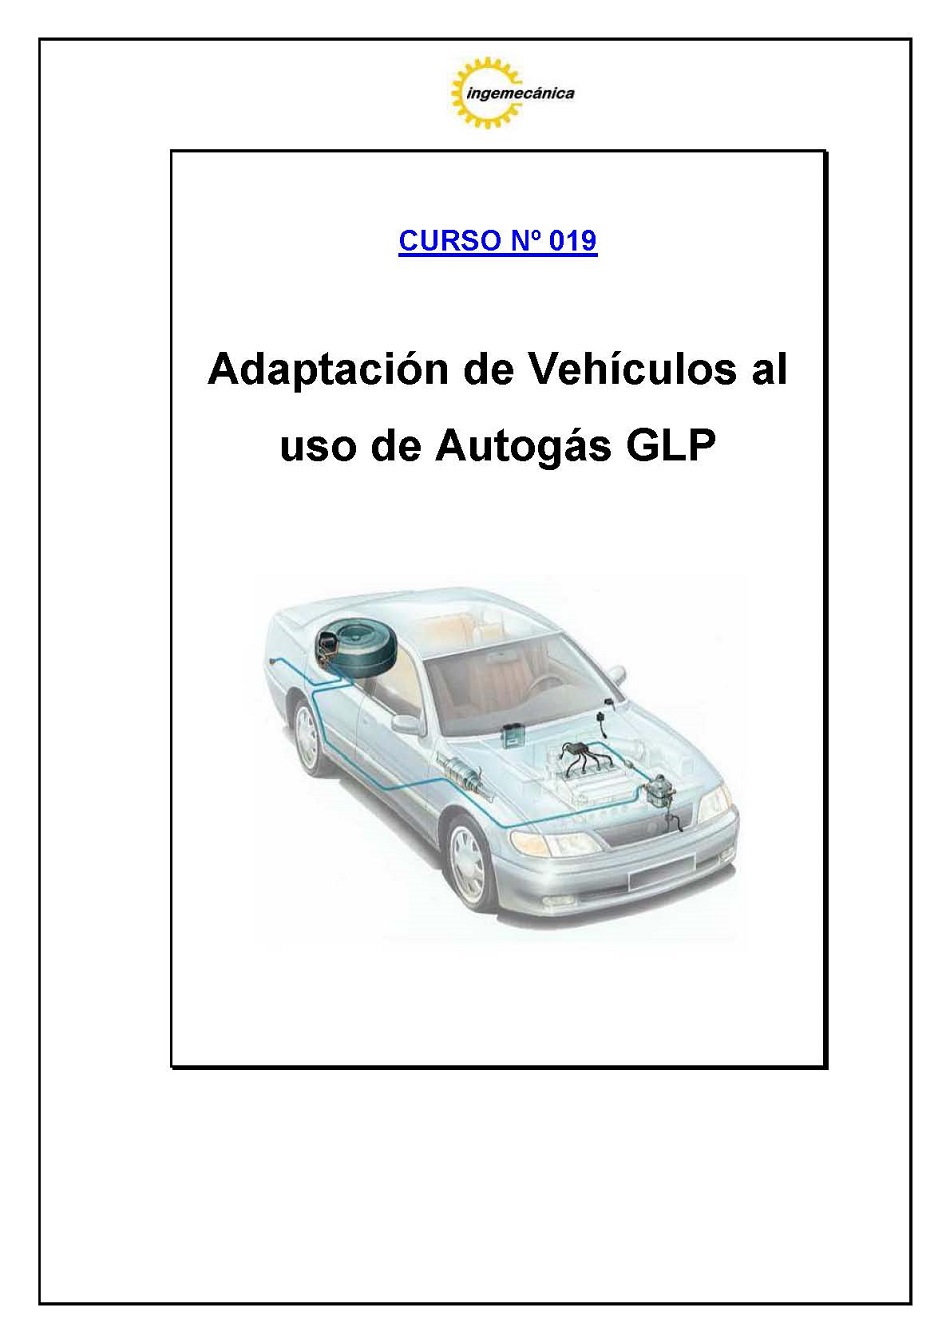 Curso para la Adaptación de Vehículos al uso de Autogás GLP. Página 1